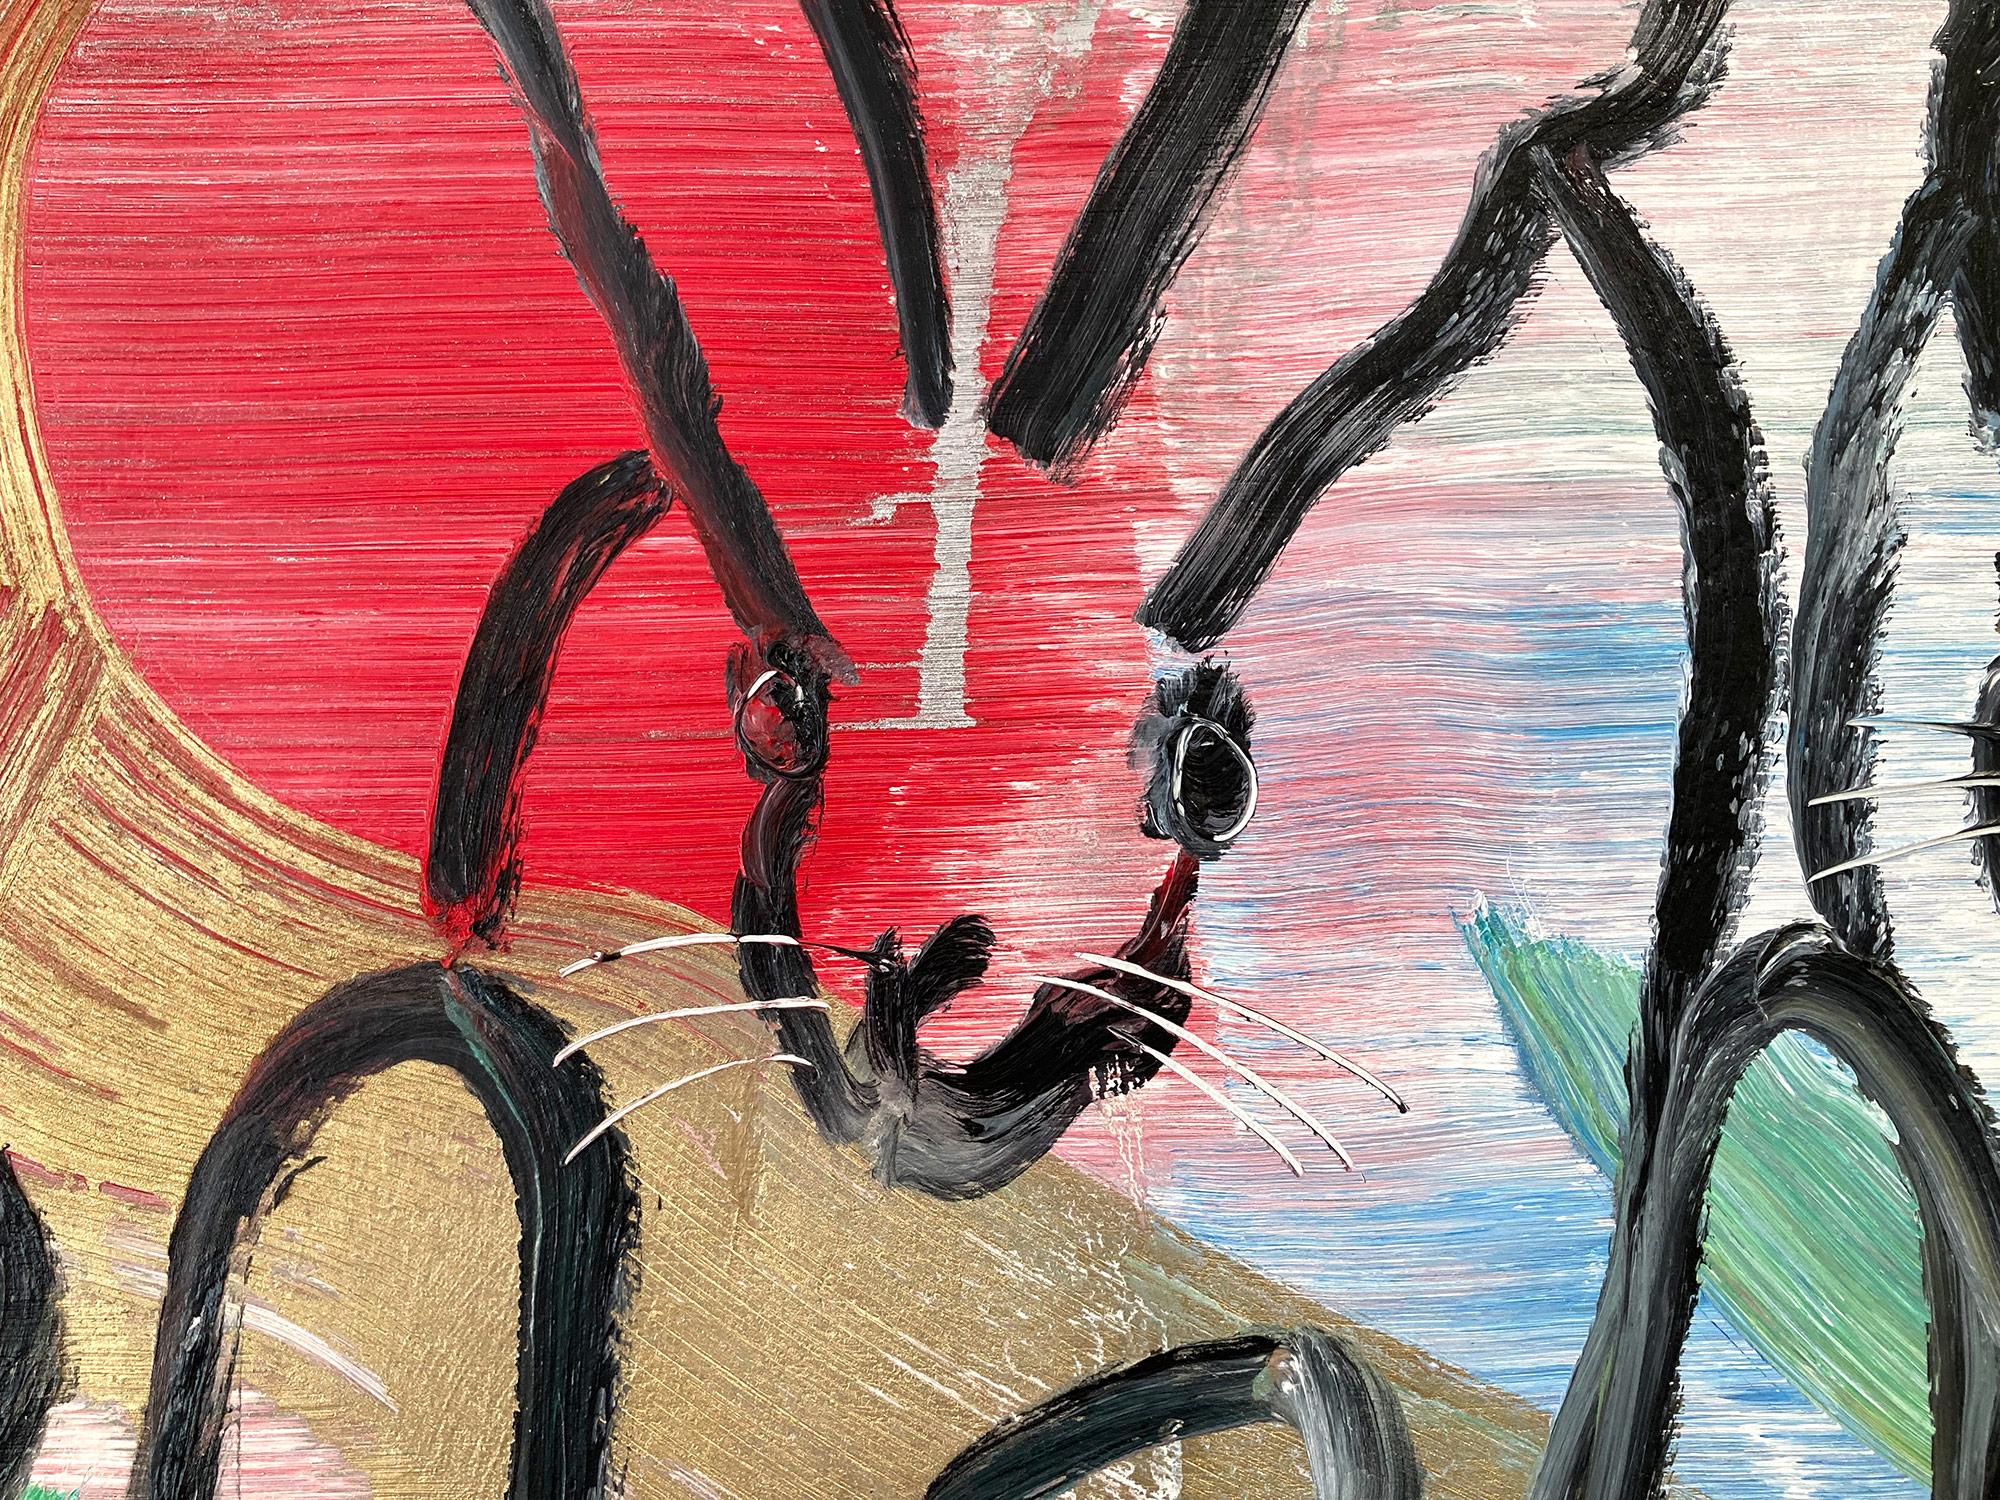 Une magnifique composition de l'un des sujets les plus emblématiques de Slonem, les lapins. Cette pièce représente des figures gestuelles de lapins multicolores sur une surface métallique dorée et argentée. Slonem trace ces 12 lapins à l'aide d'une